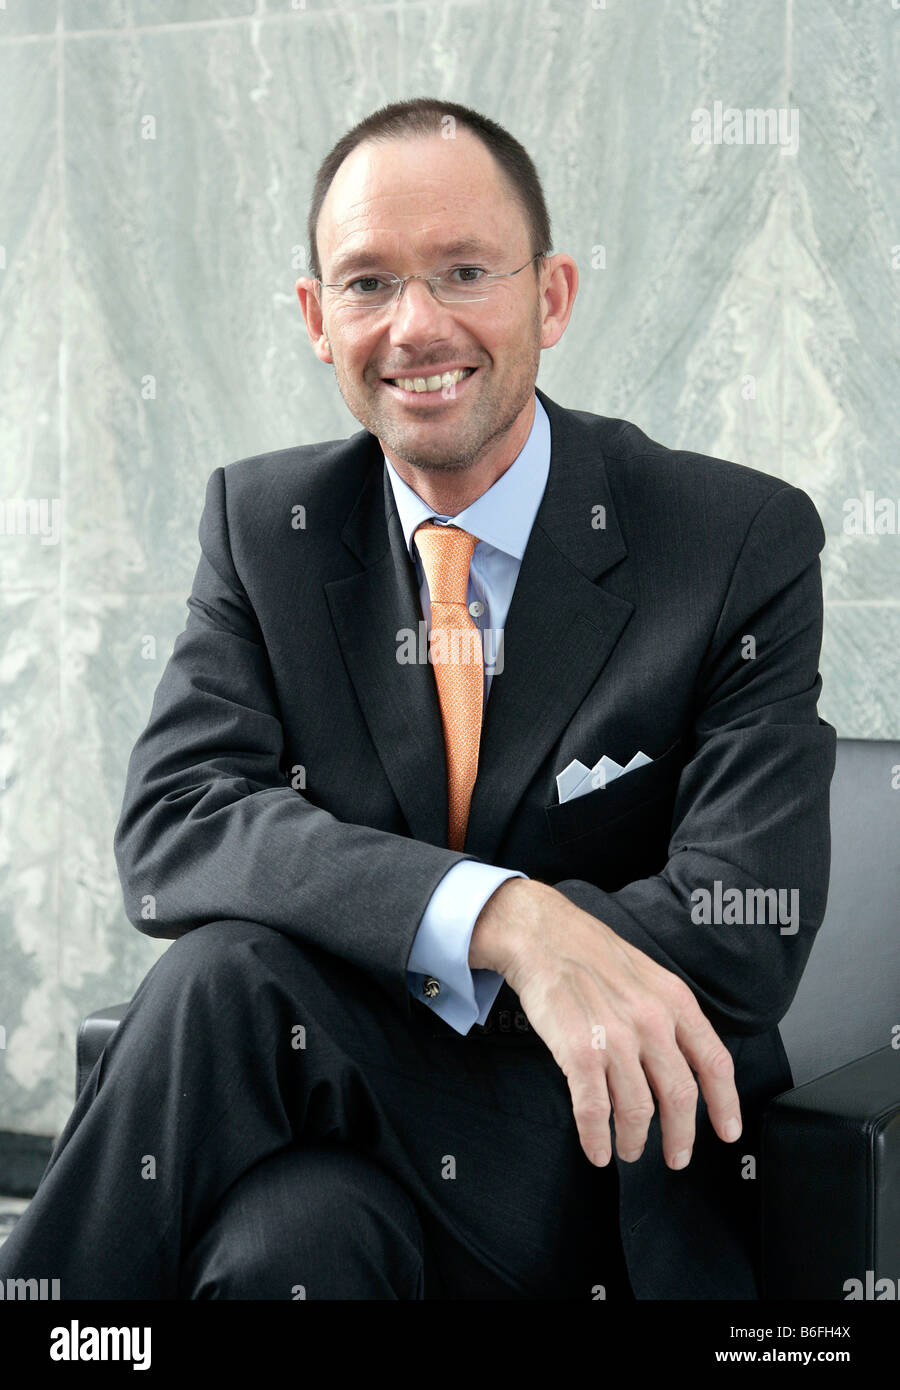 L Wuebbenhorst Klaus, presidente de la GfK AG, Gesellschaft fuer Konsumforschung o consumidor, empresa de investigación durante el pre Foto de stock